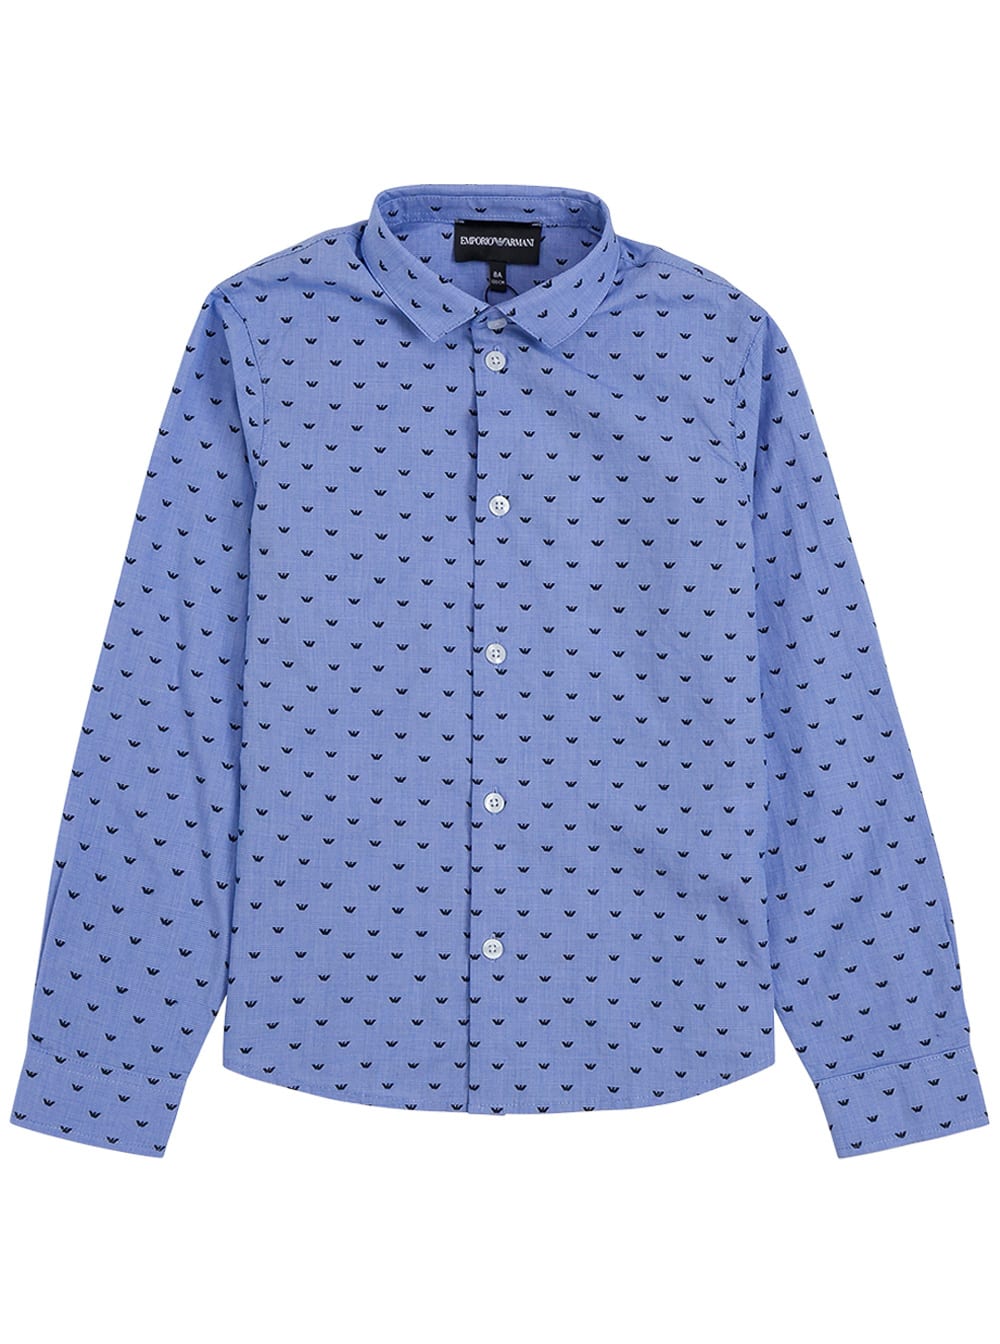 Emporio Armani Light Blue Cotton Shirt With Allover Logo Print